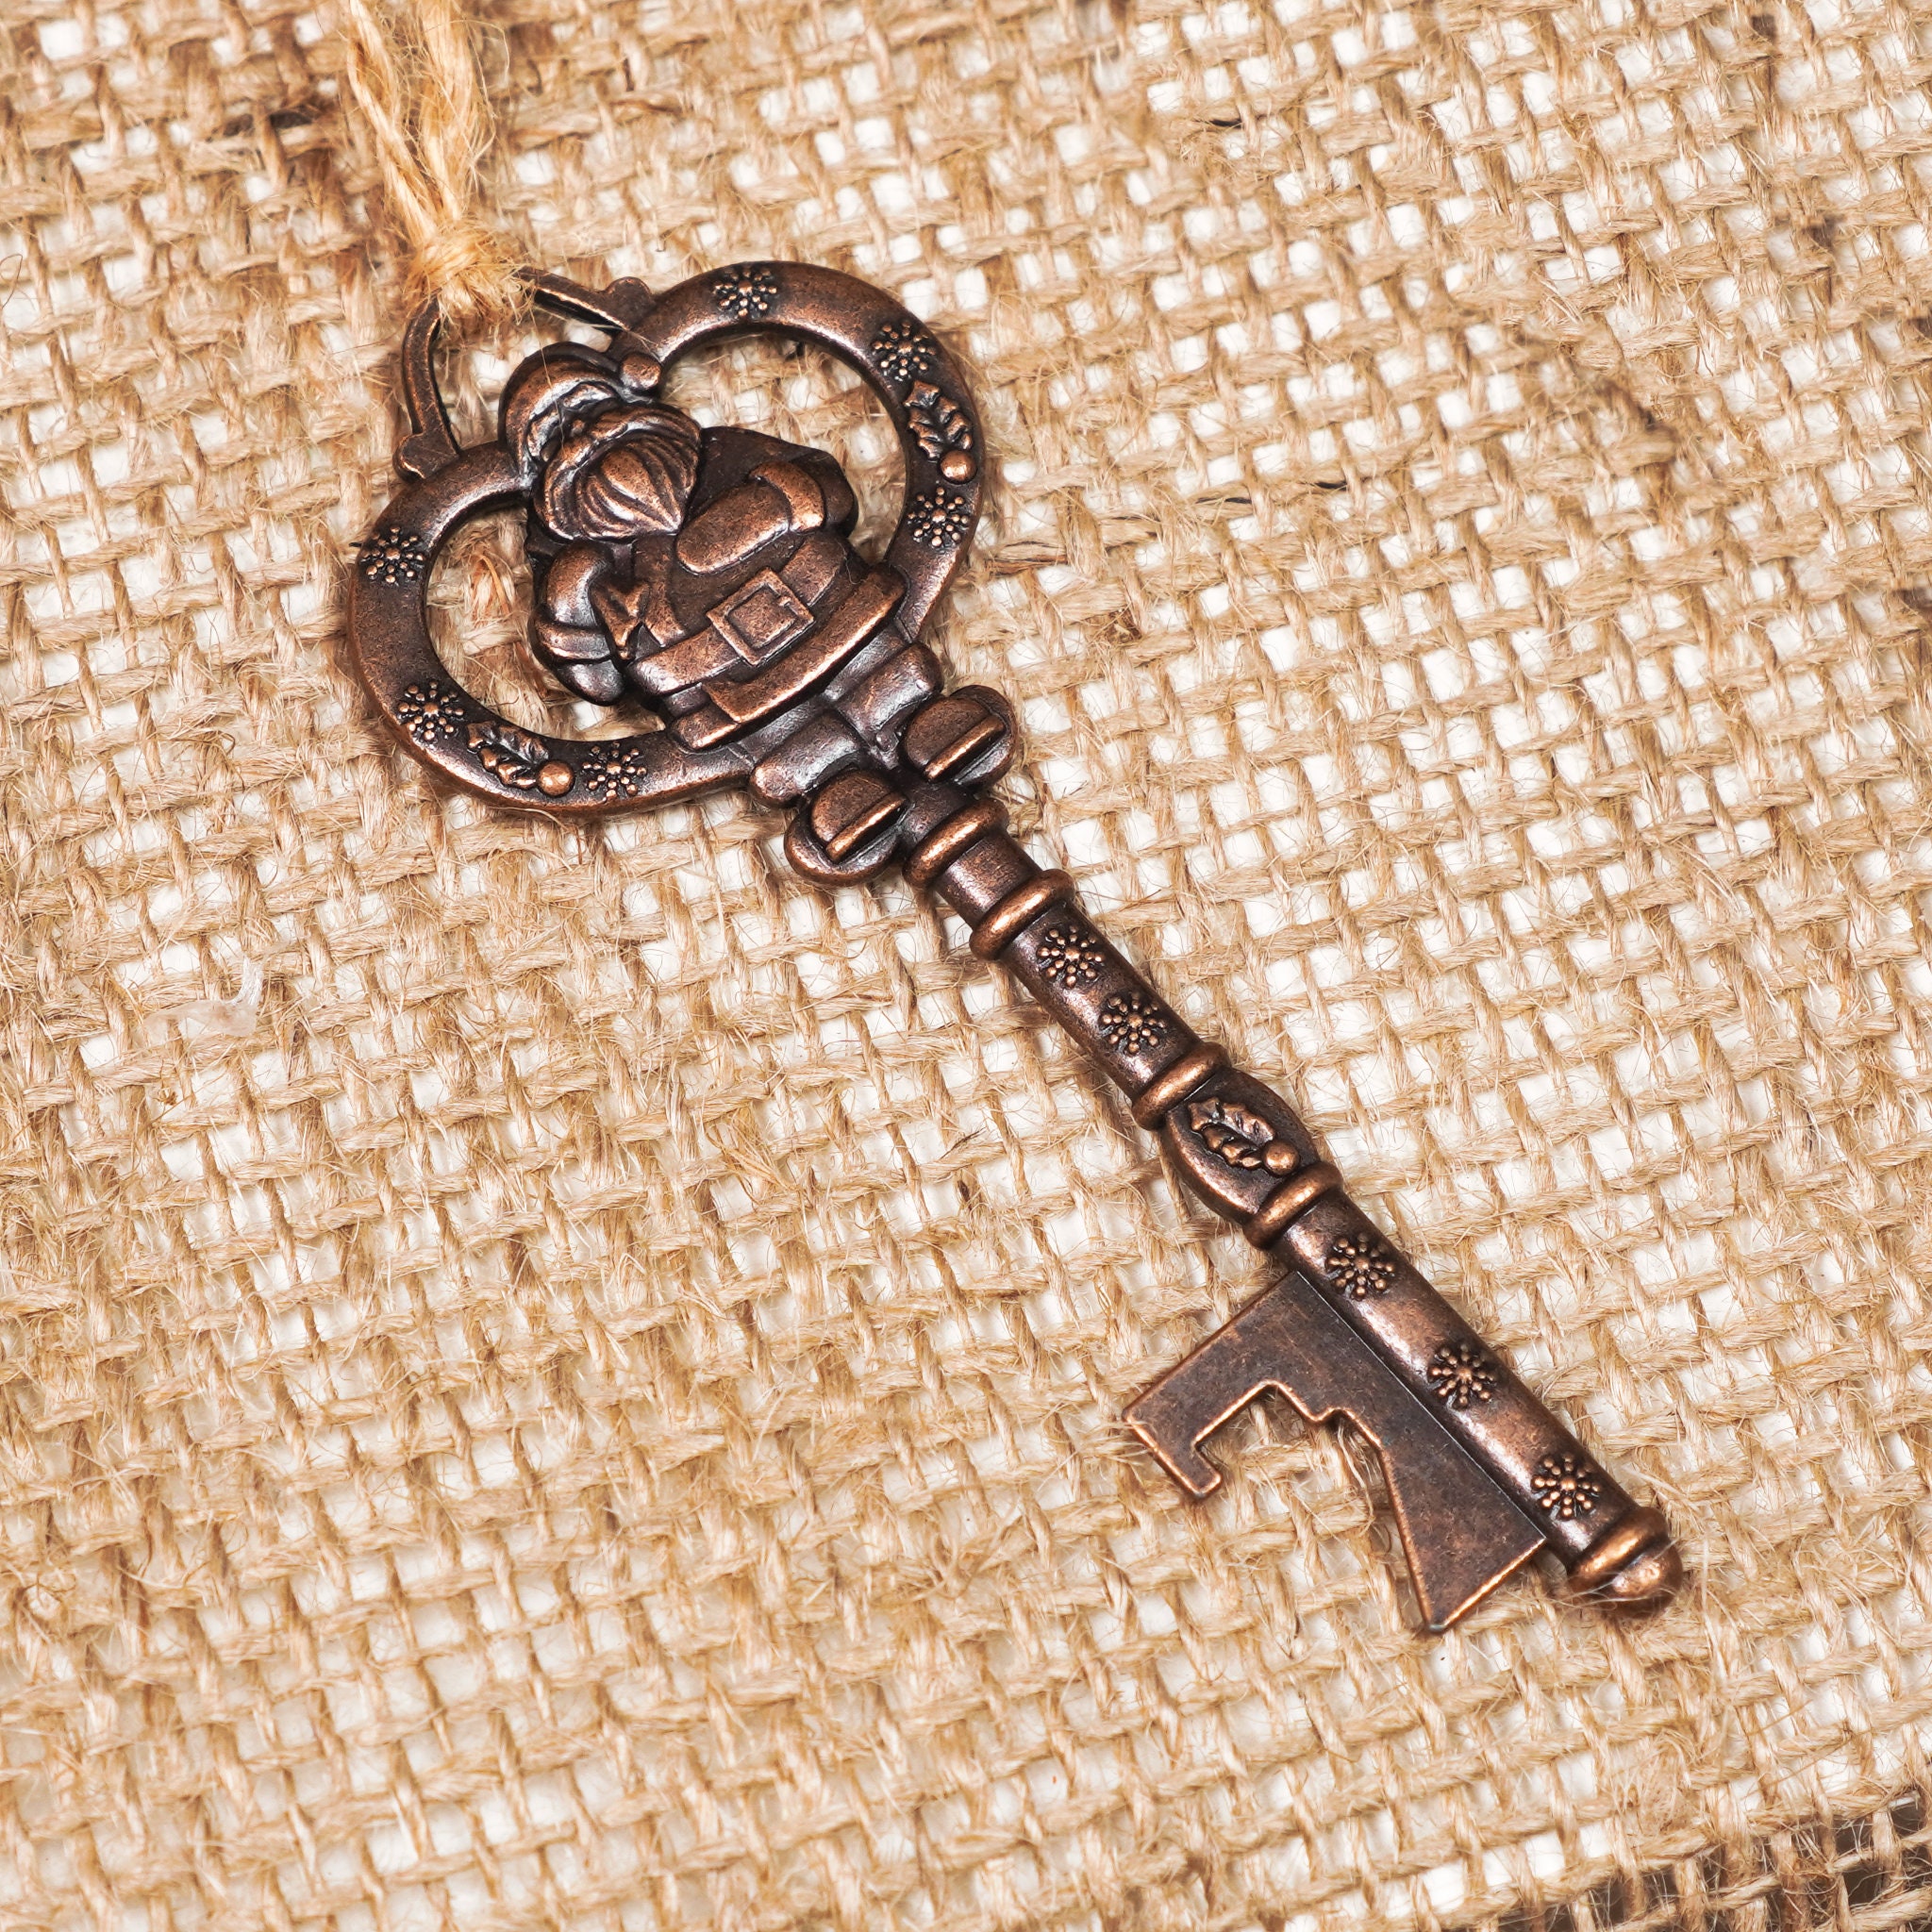 Personalisierter Schlüssel für Santa No Chimney Special Schlüssel